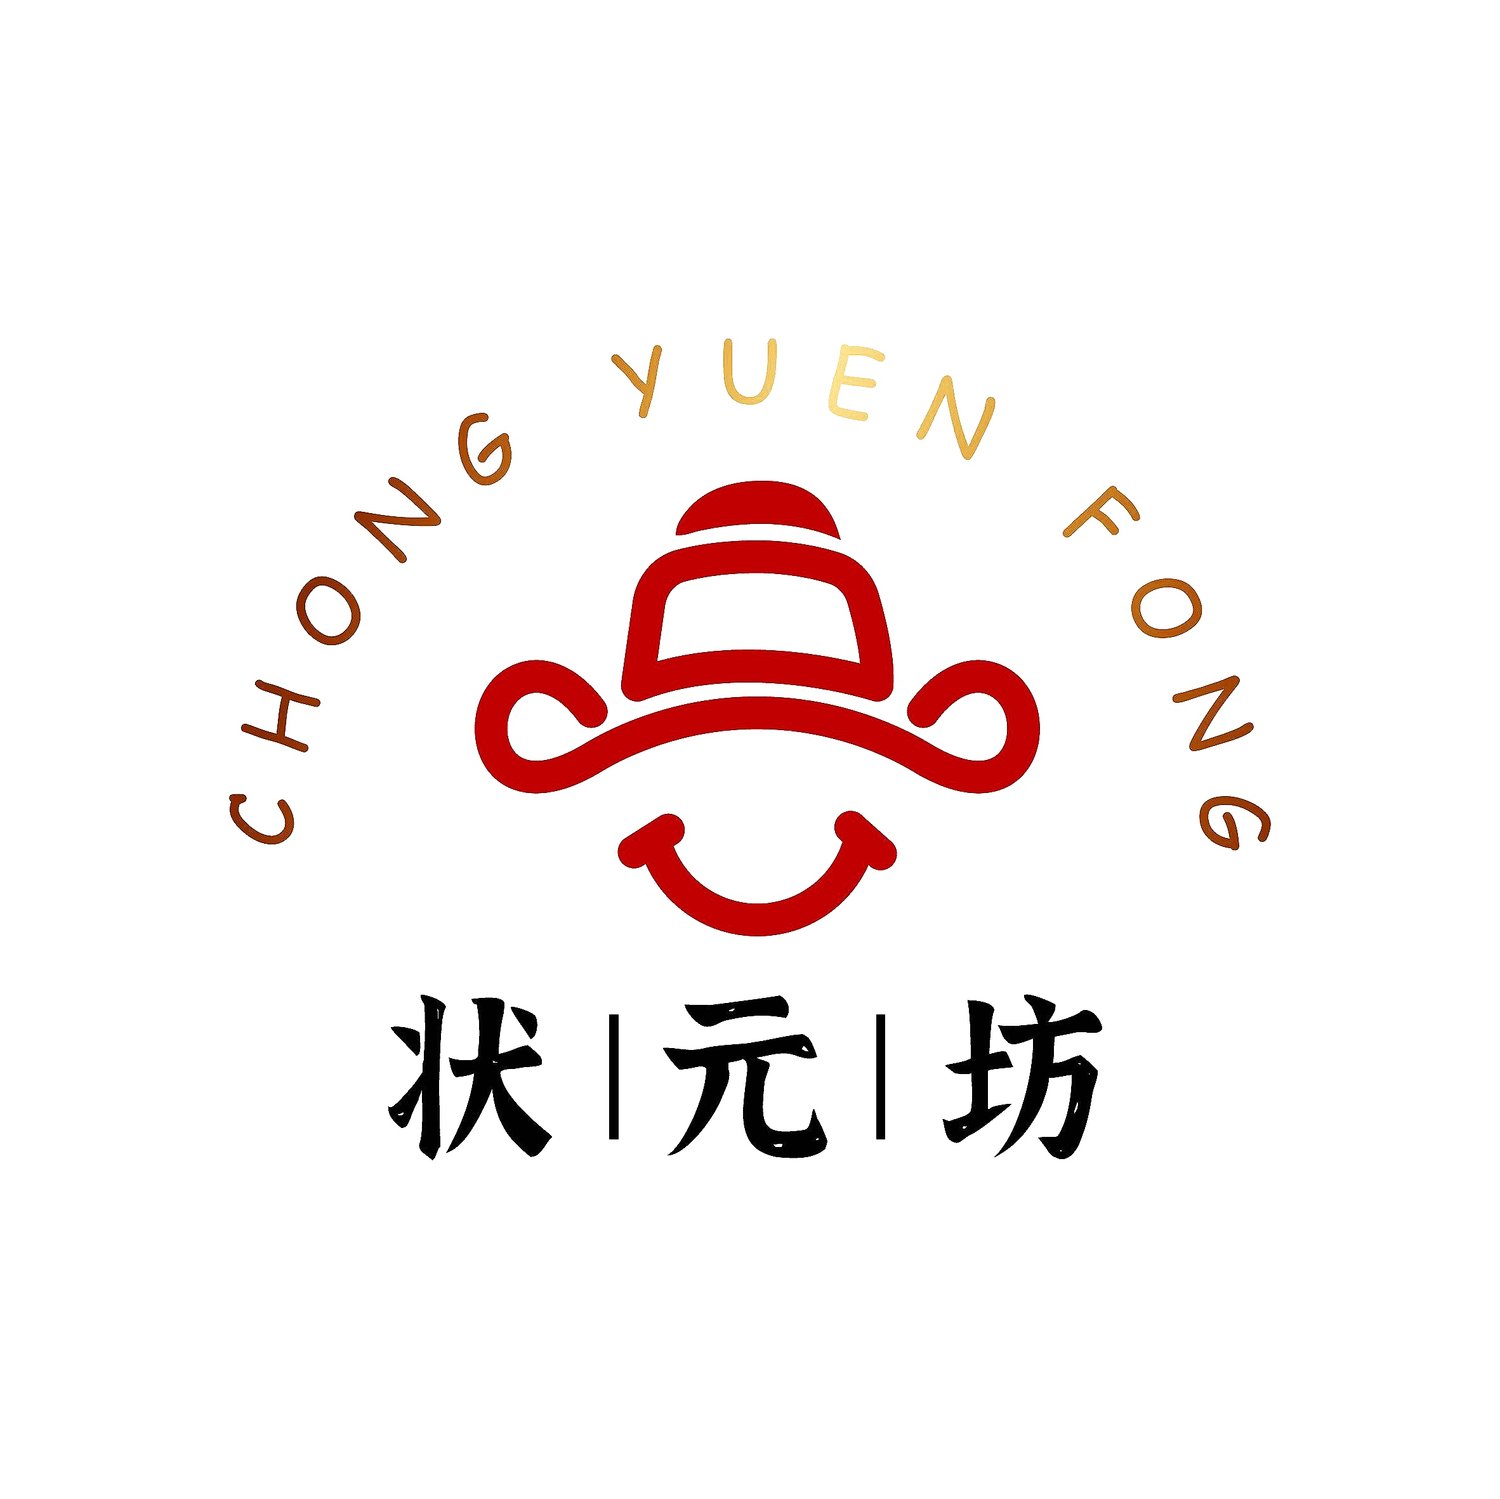 Chong Yuen Fong